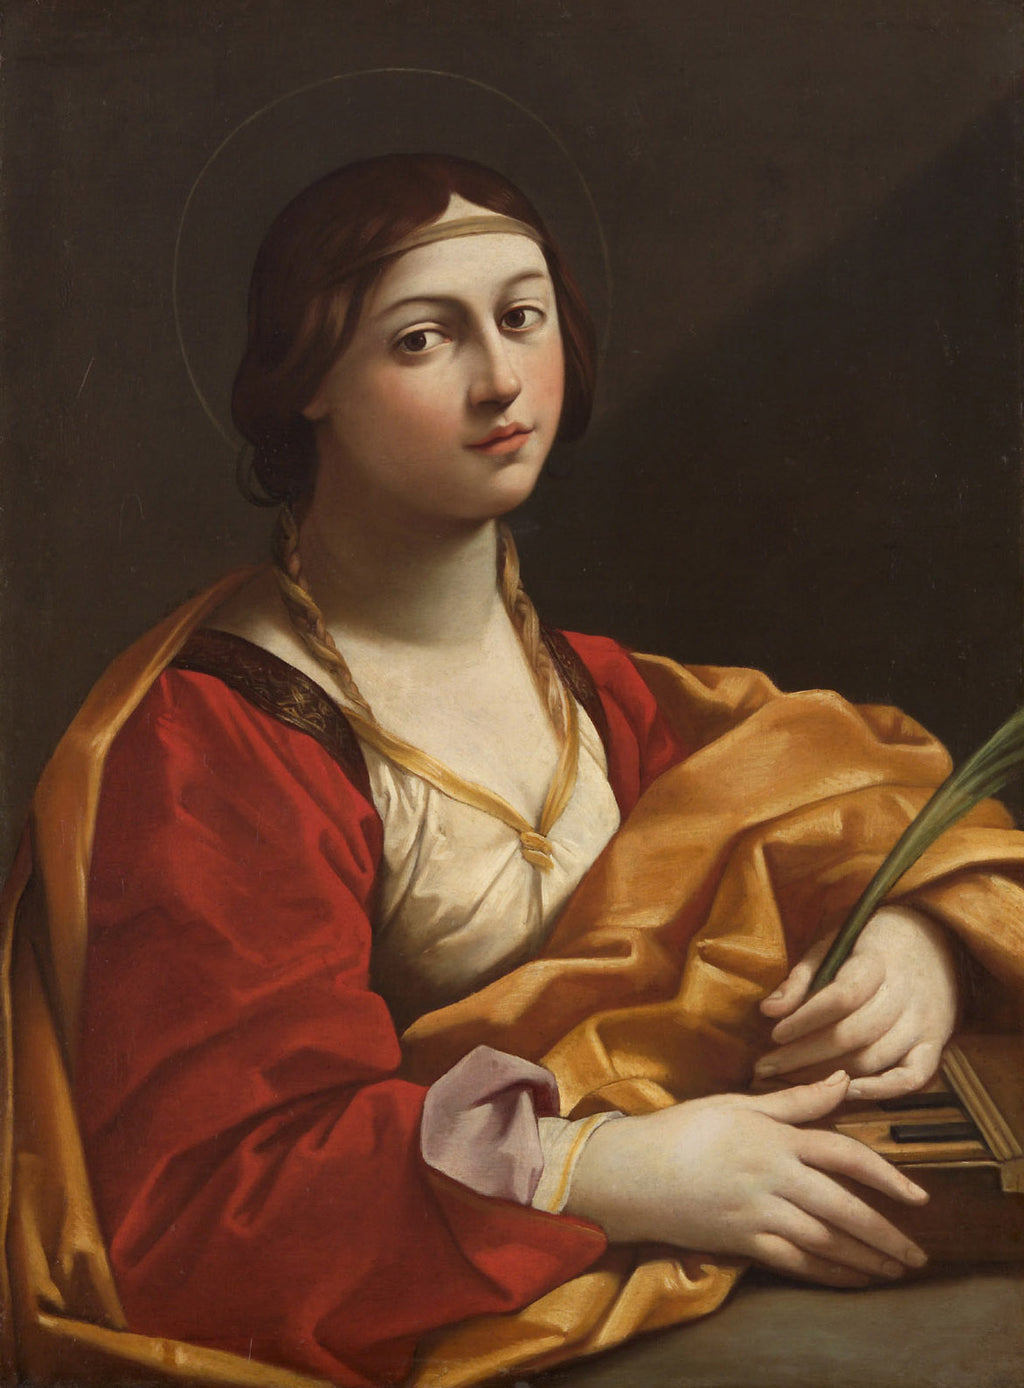 St Cecilia I